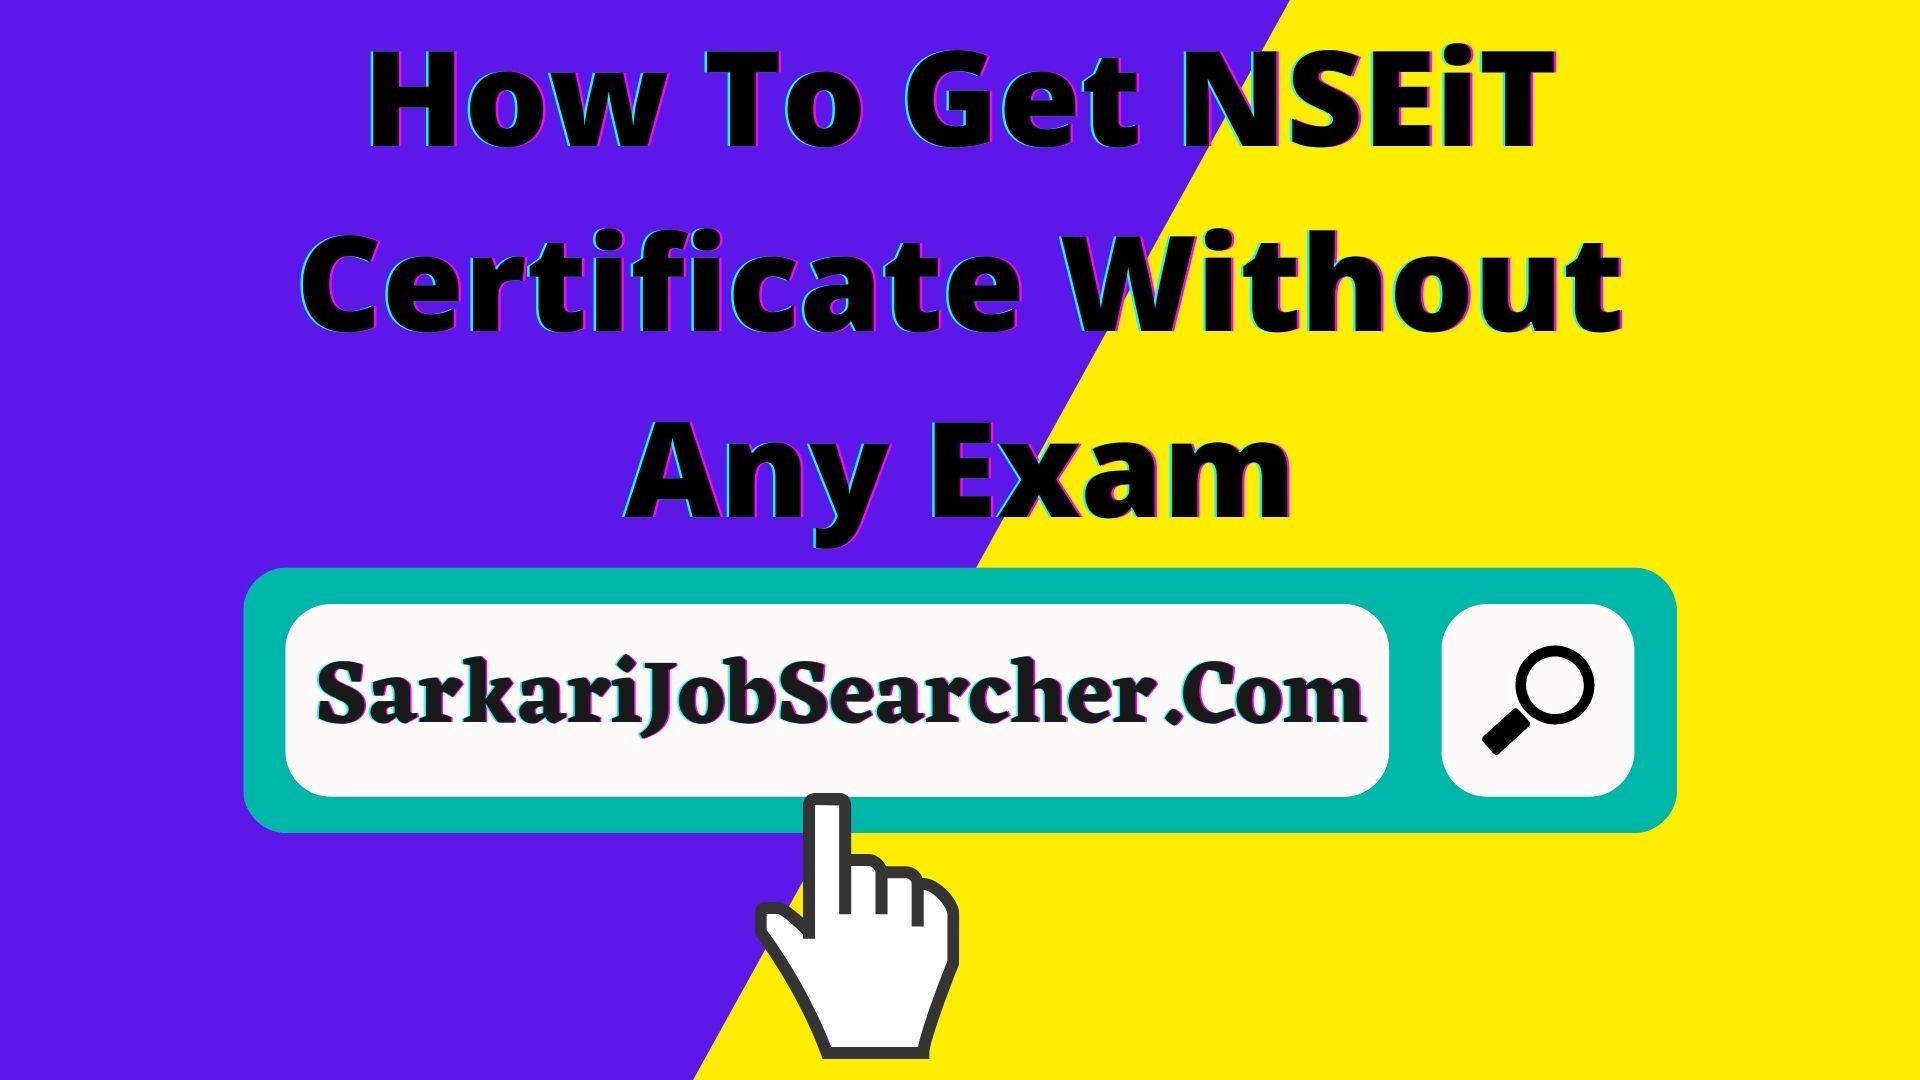 How To Get NSEiT Certificate Without Any Exam - बिना किसी परीक्षा के NSEiT प्रमाणपत्र कैसे प्राप्त करें